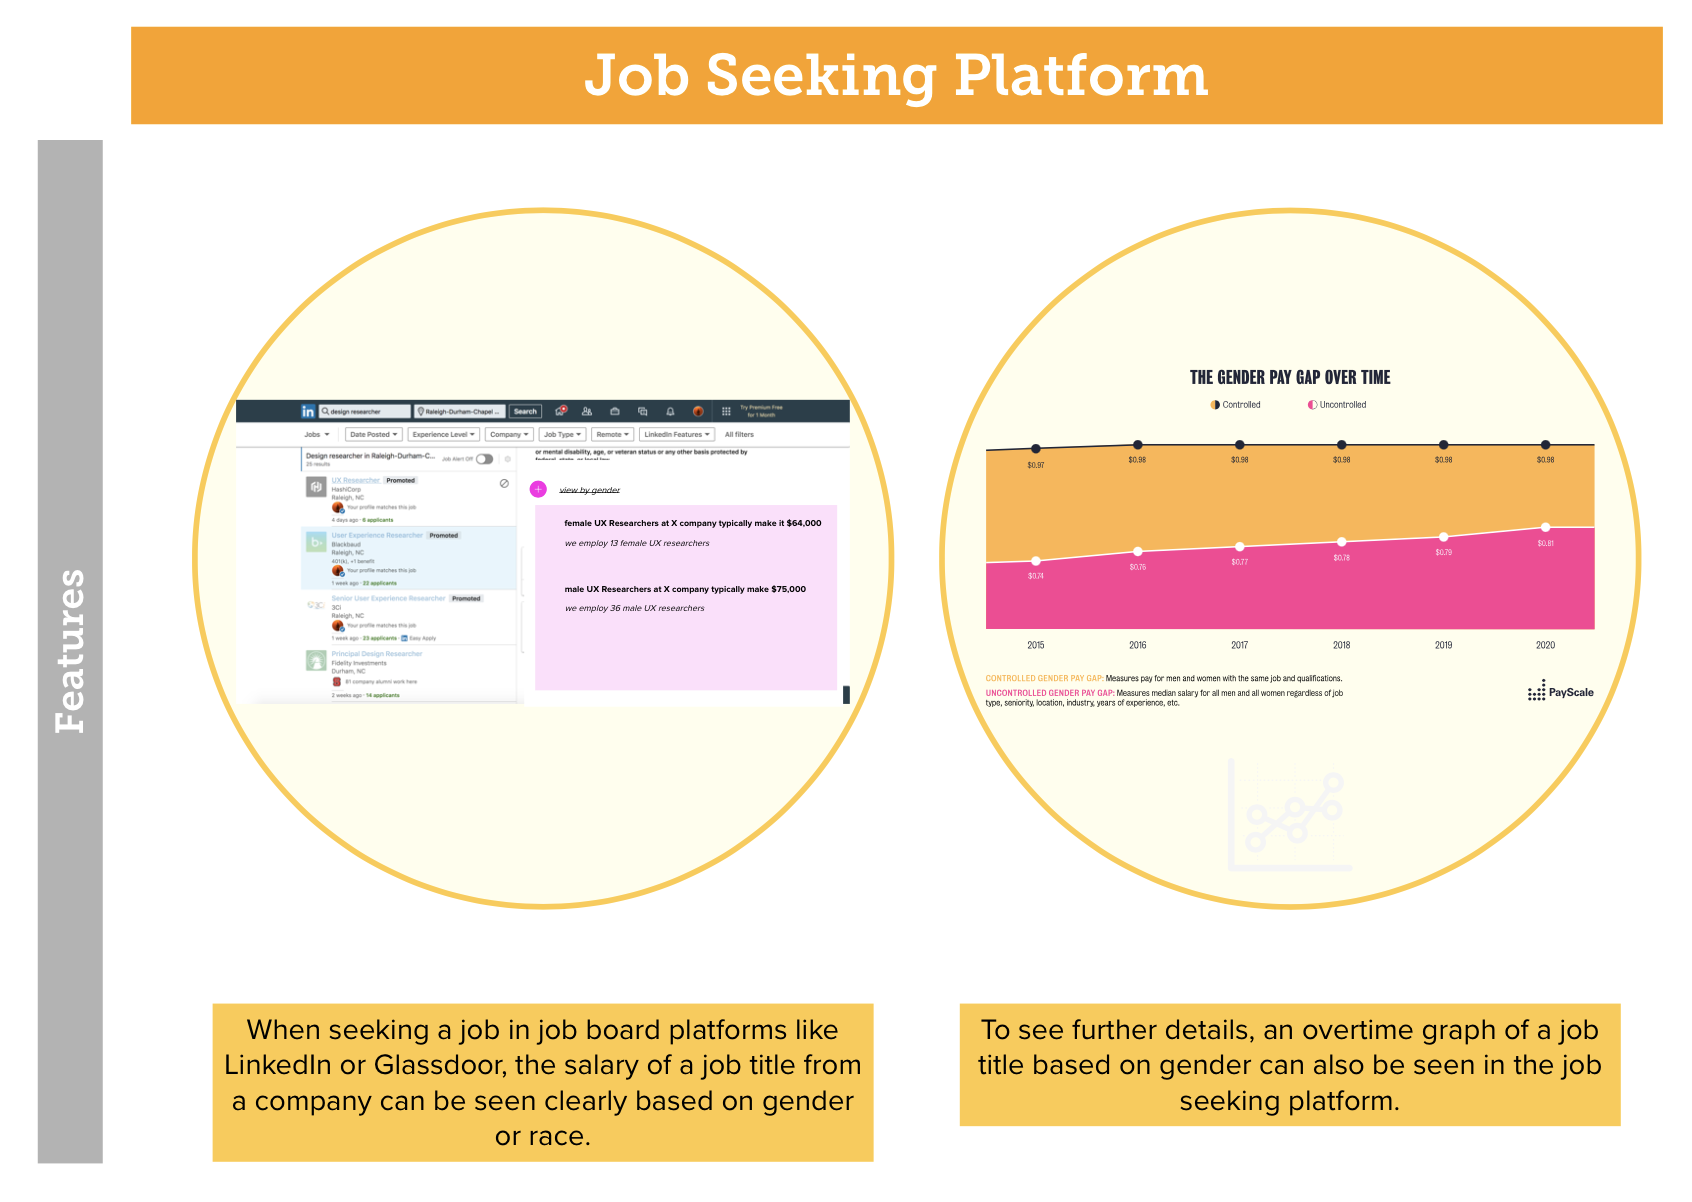 job seeking platform image